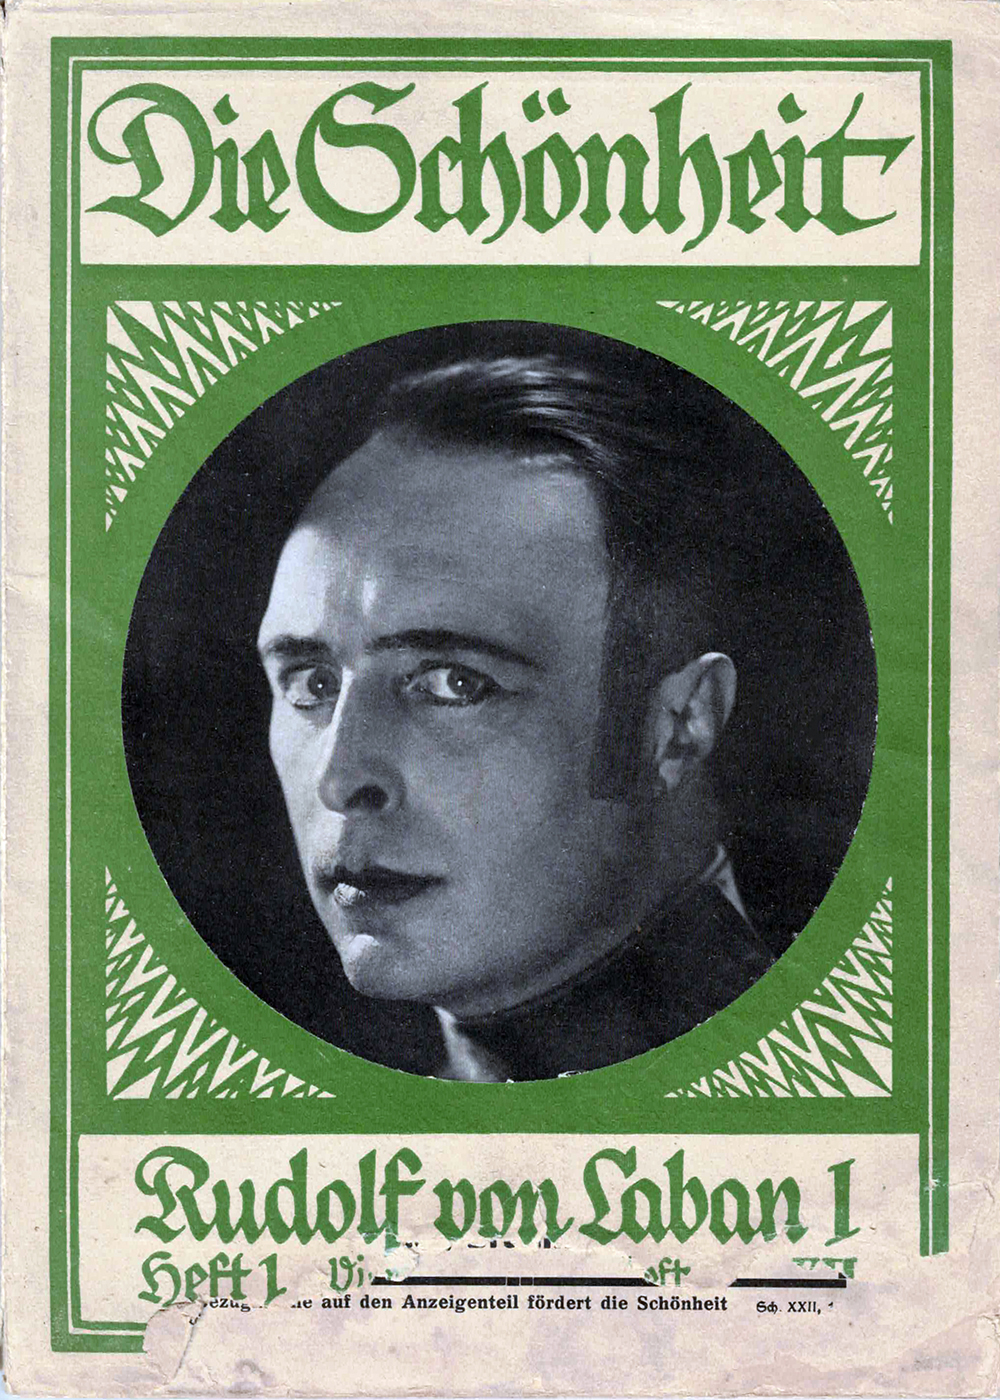 Titel der Zeitschrift »Die Schönheit«. XXII. Jg. (1926), Heft 1, Viertes Rhythmusheft –  Rudolf von Laban, vermutlich in der Rolle des »Don Juan« (1925). Photograph nicht genannt.